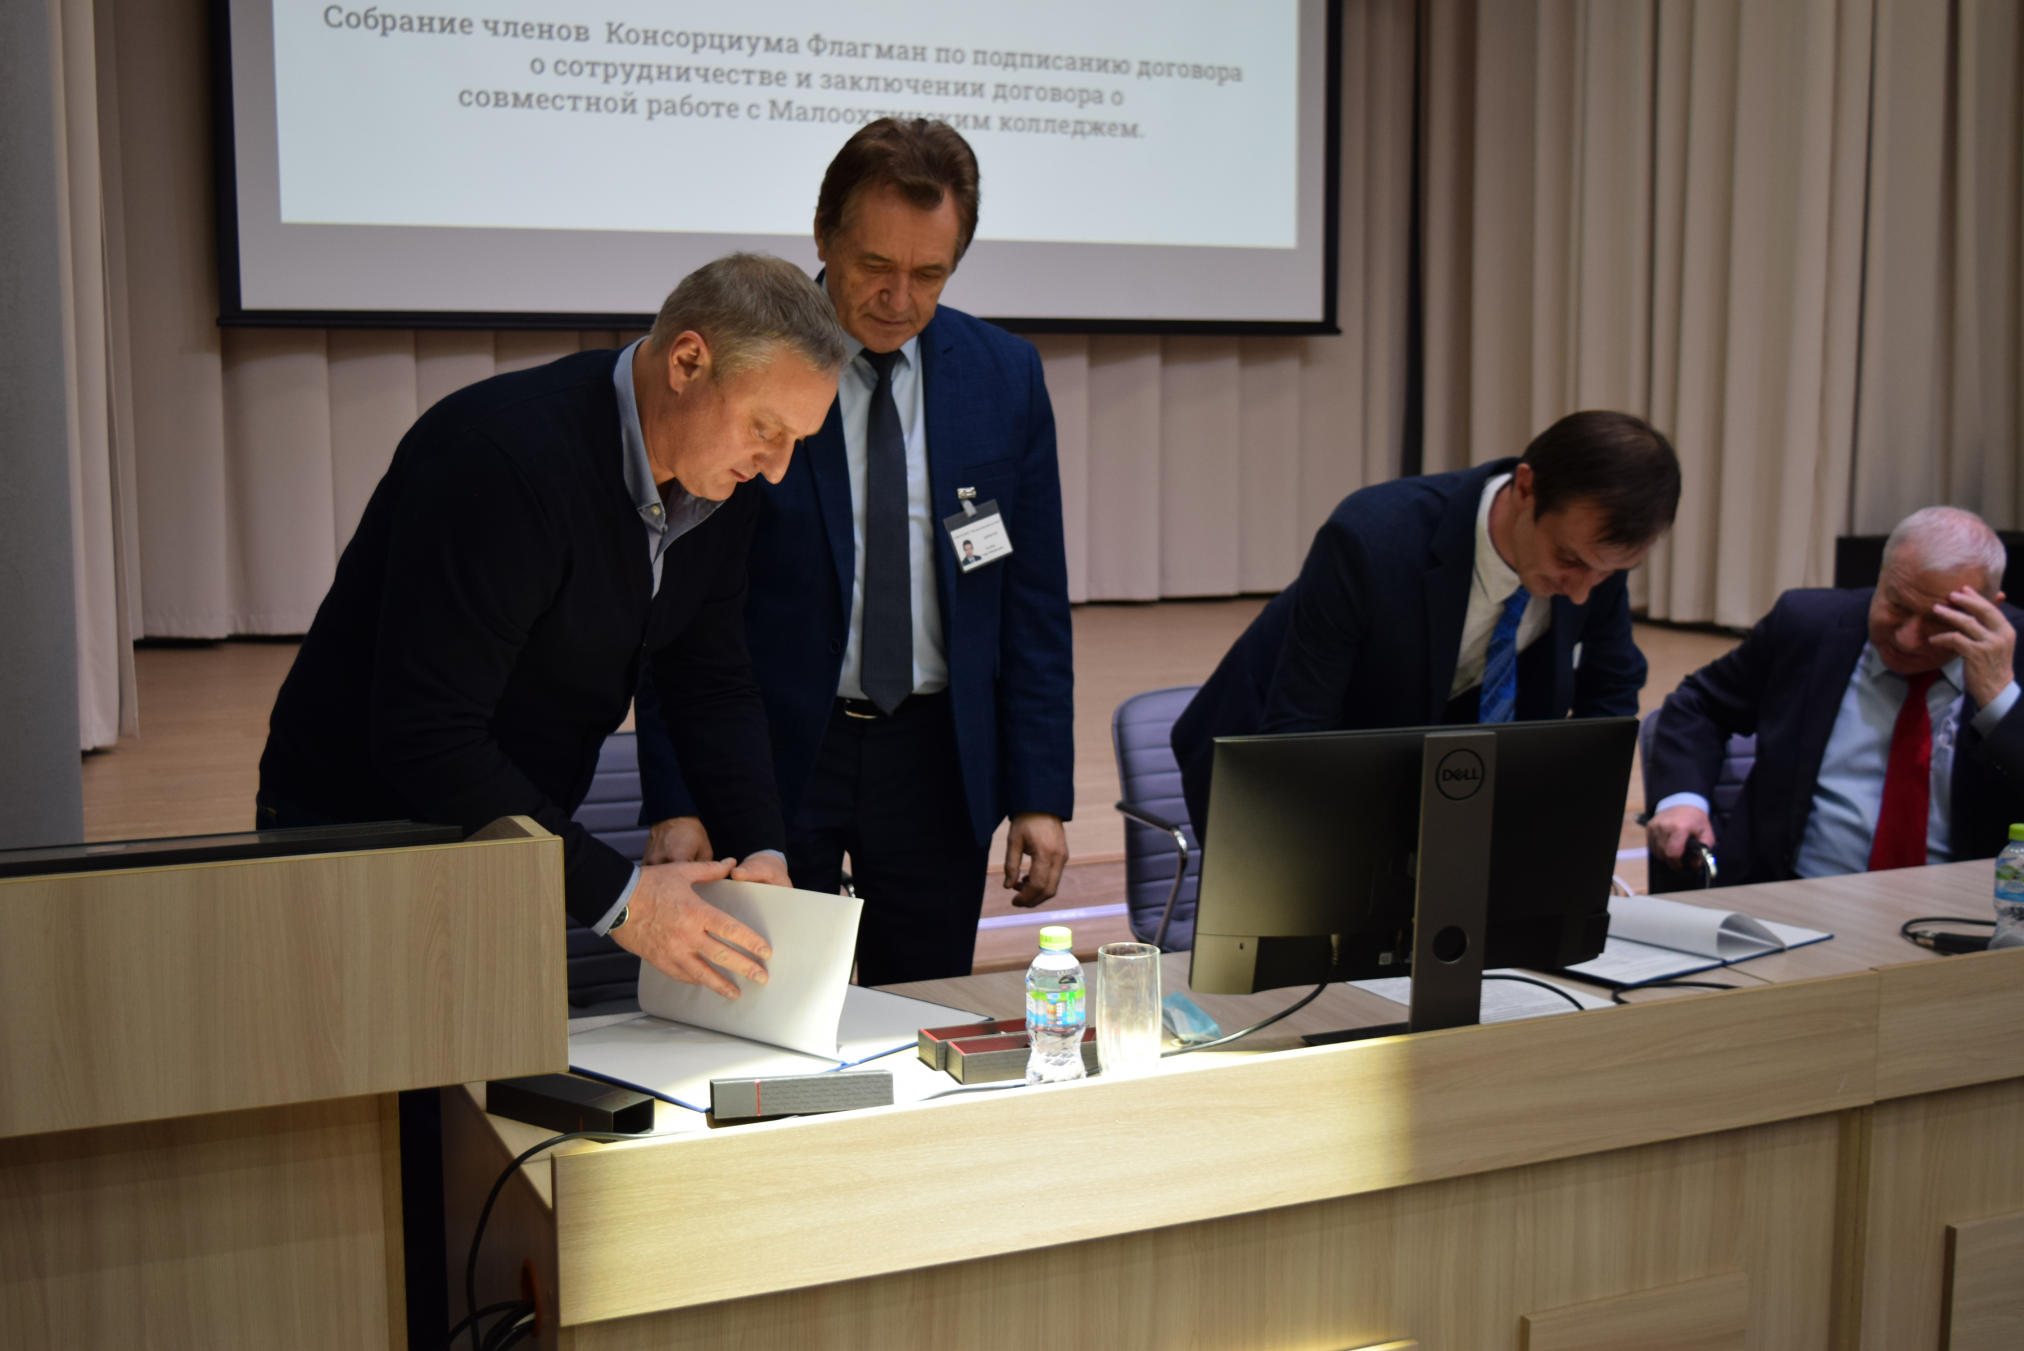 Собрание членов Консорциума Флагман по подписанию договора о сотрудничестве и заключении договора о совместной работе с Малоохтинским колледжем.